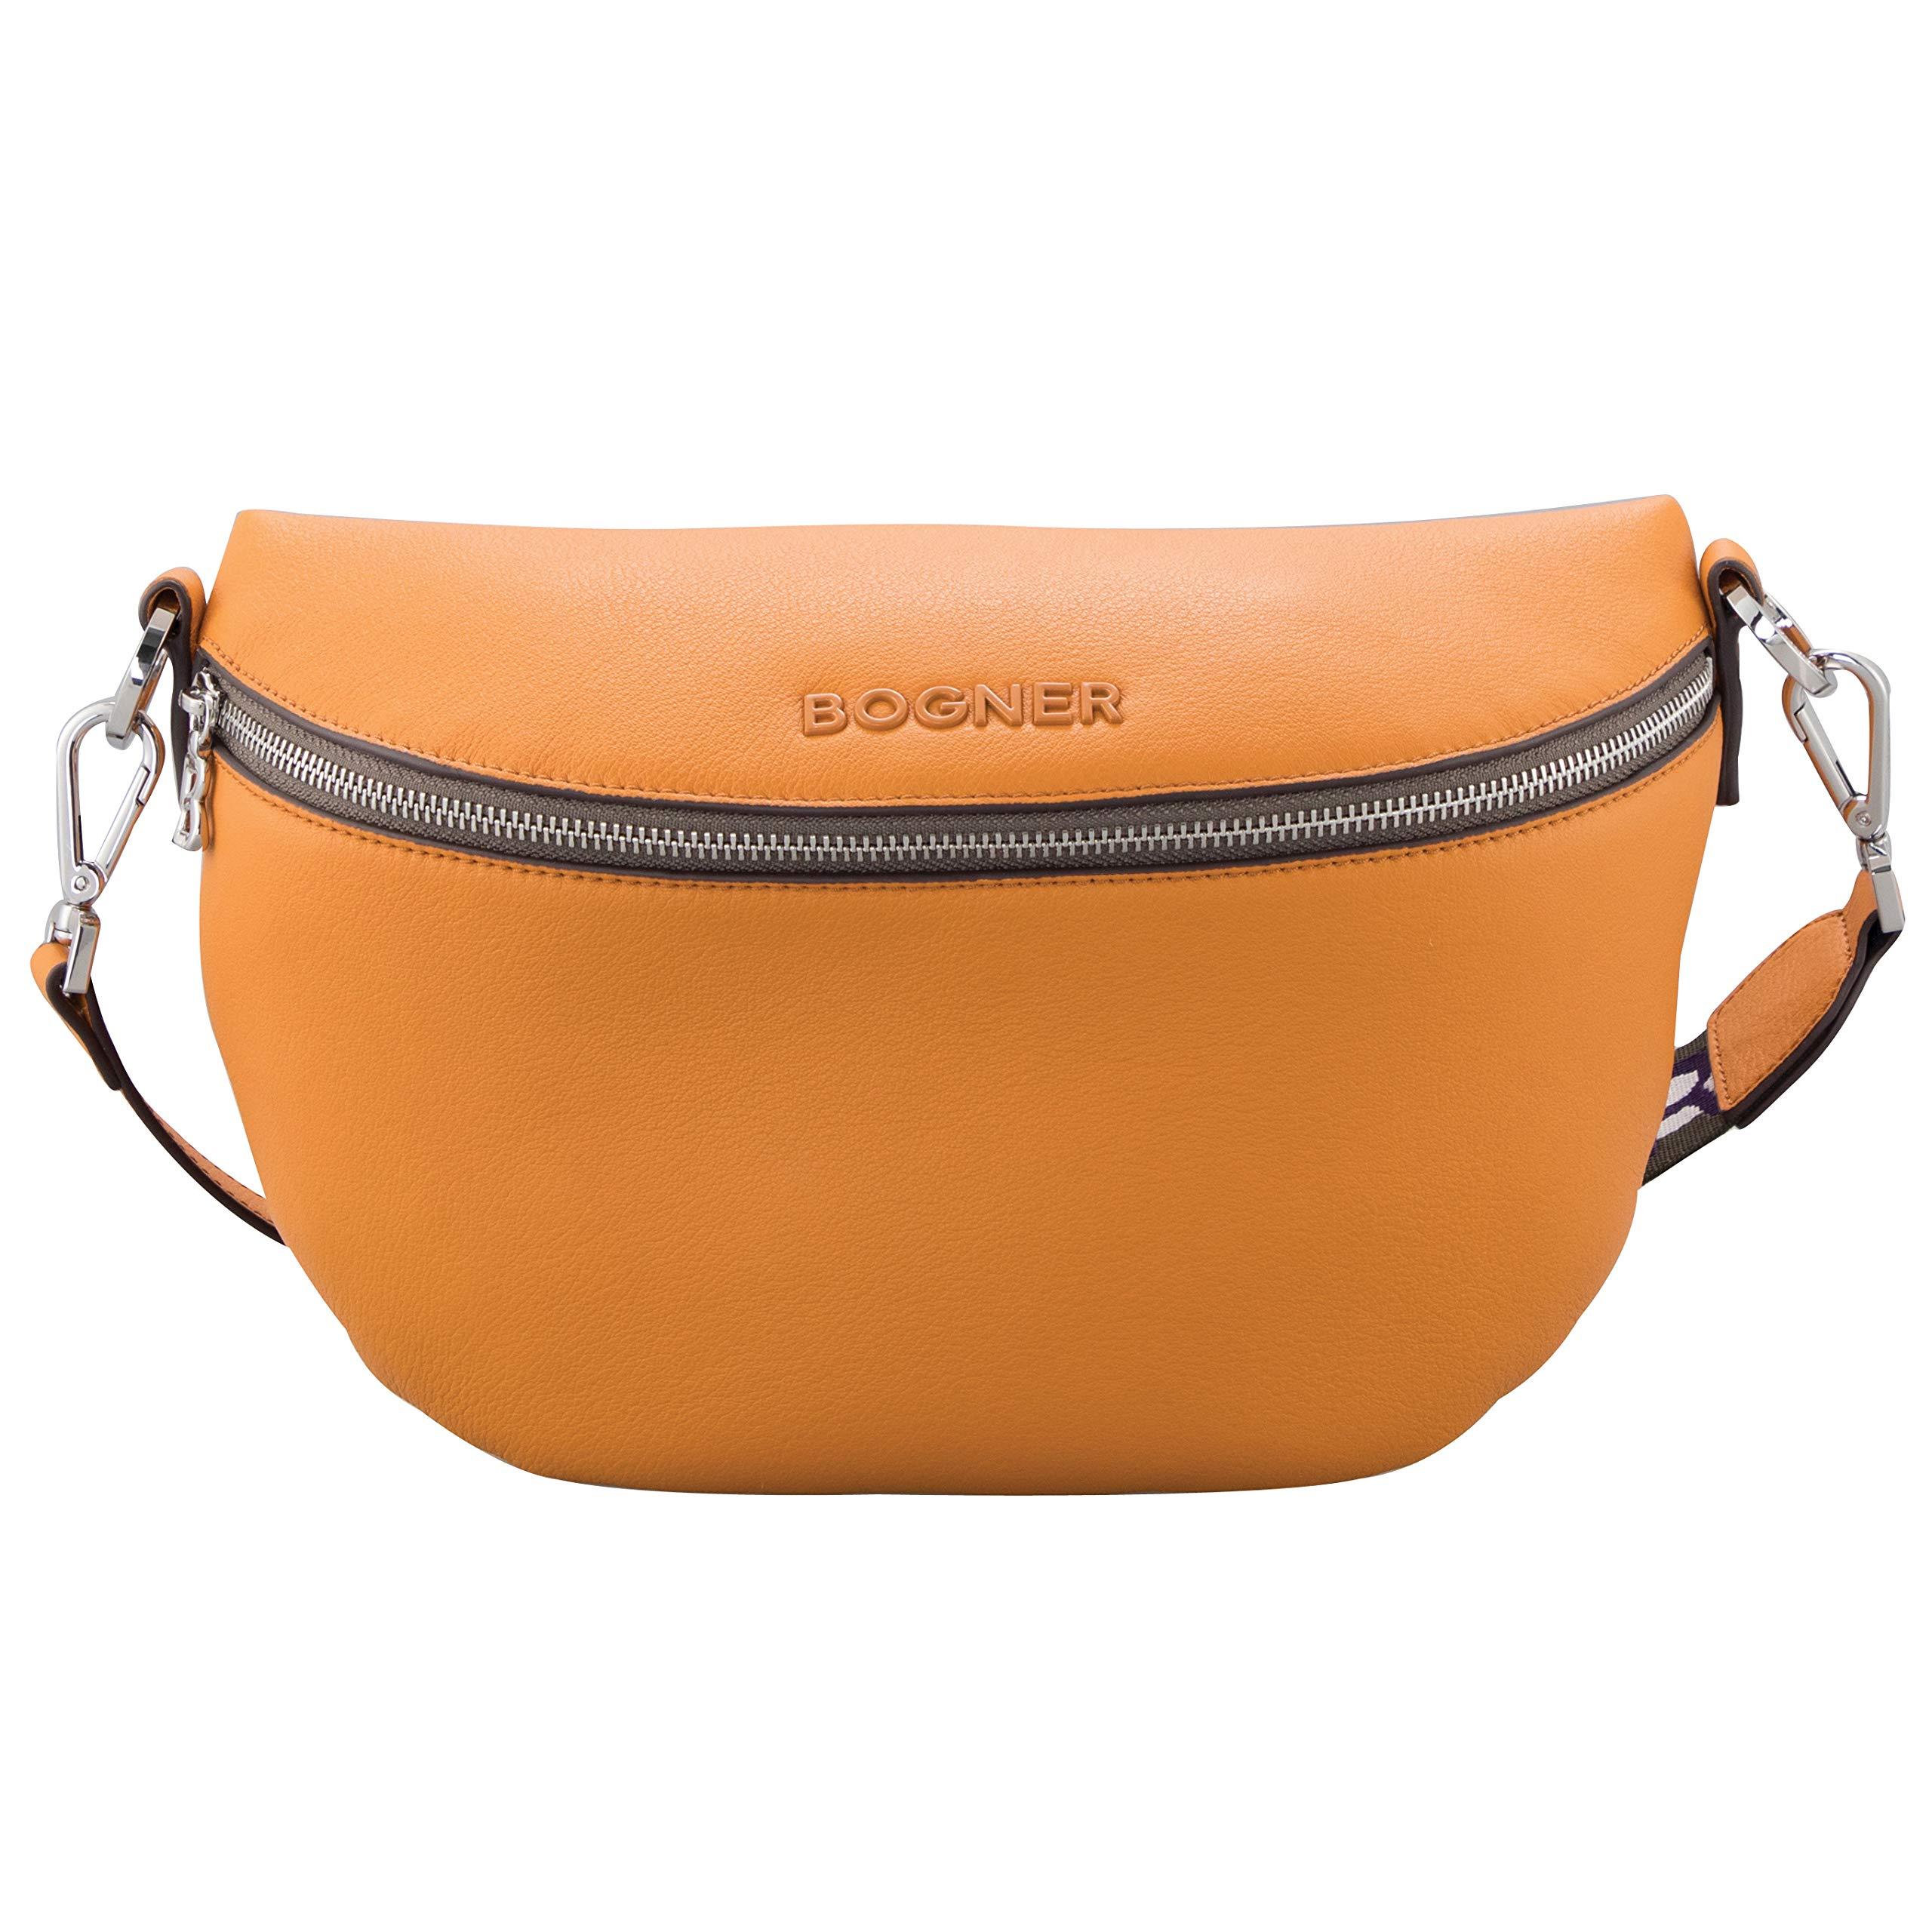 Bogner Courchevel Sina Schultertasche Tasche aus Leder in Orange | Lyst DE